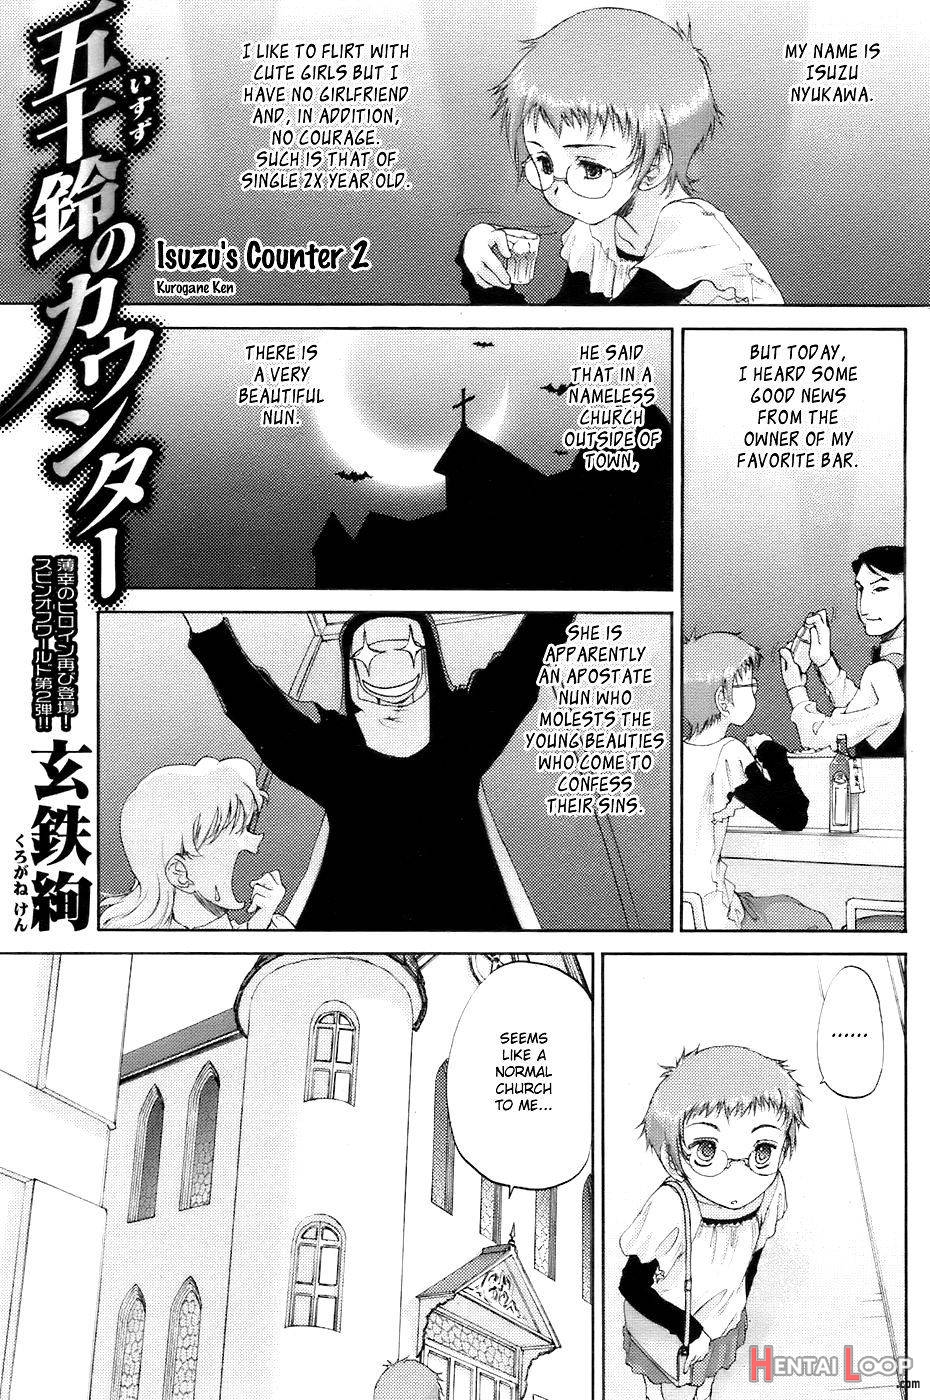 Isuzu no Counter page 9